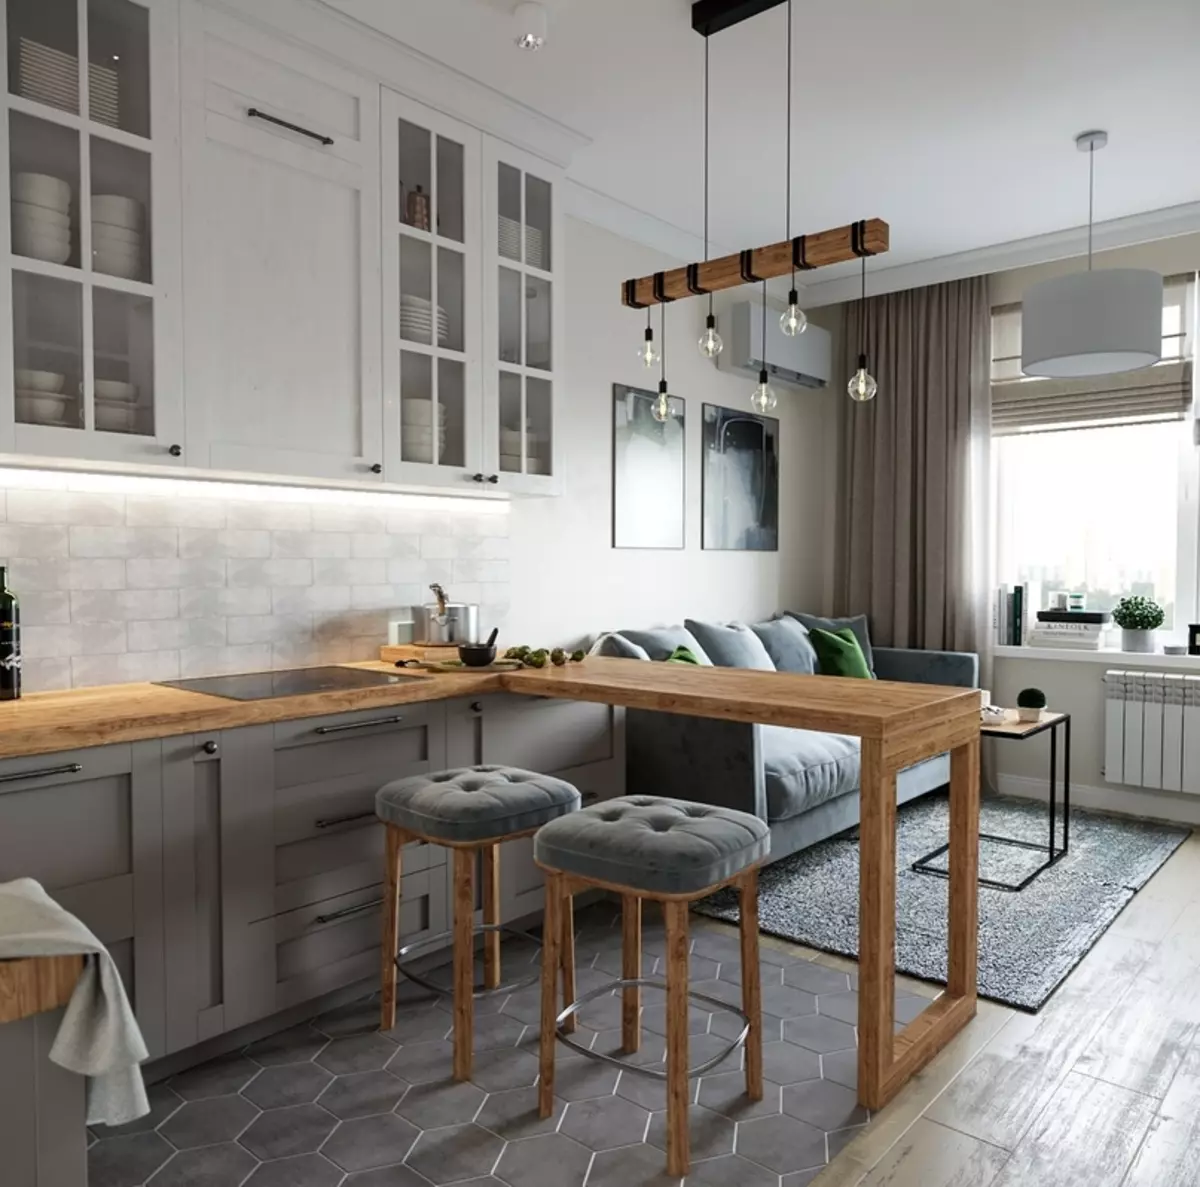 Sala de cozinha em cores claras (40 fotos): Design de interiores de quartos combinados em cores brancas e pastel com um headcard. Exemplos em estilos modernos e clássicos 9538_31